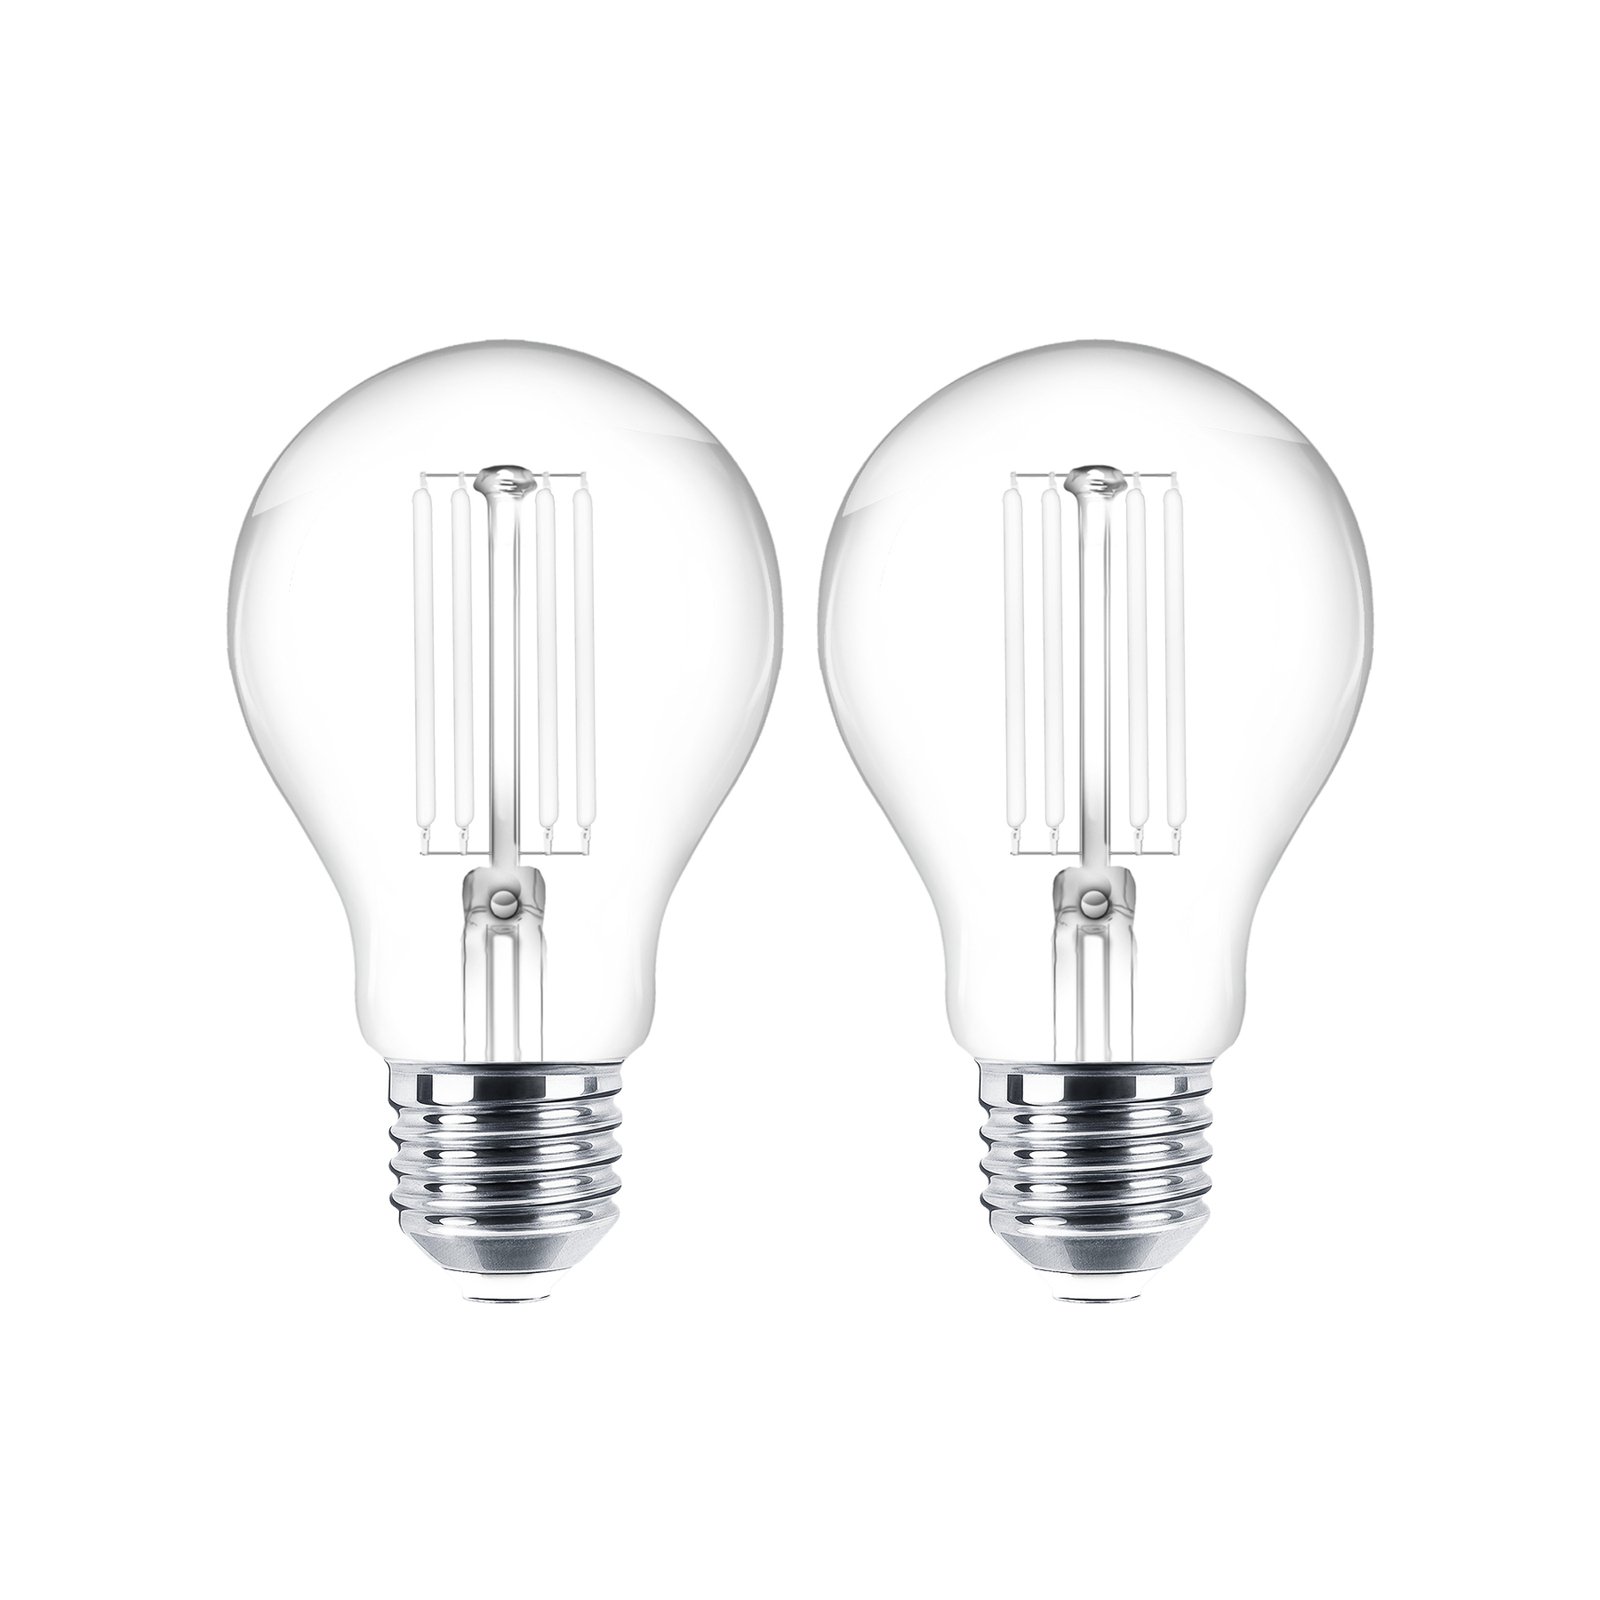 LED bulb filament E27 clear 4W 2700K 470lm set of 2